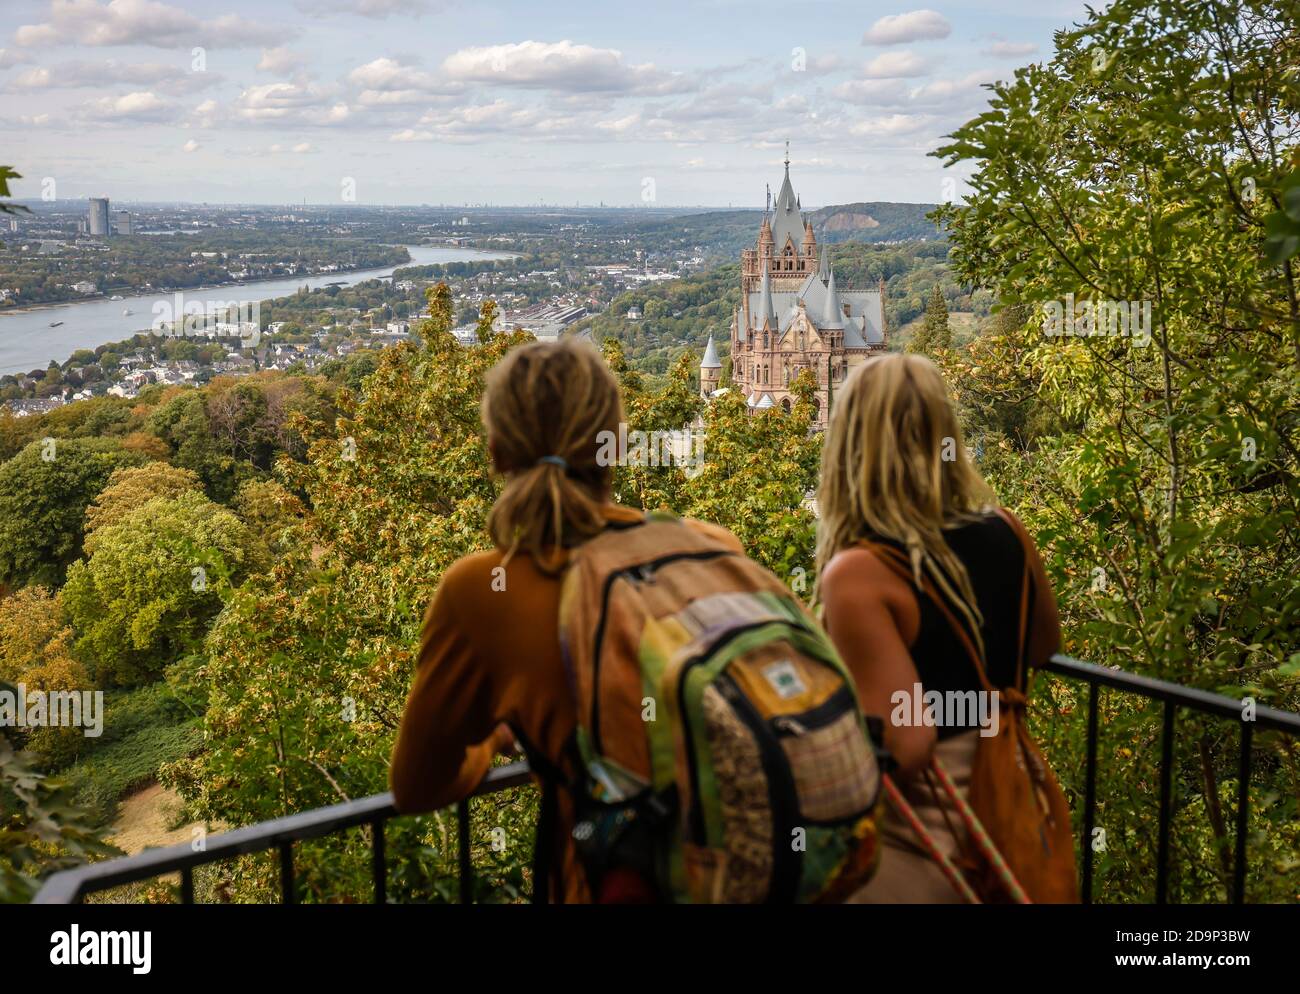 Königswinter, Nordrhein-Westfalen, Deutschland - Schloss Drachenburg am Drachenfels, Anziehungs- und Ausflugsziel im Siebengebirge am Rhein, junge Touristen mit Dreadlocks am Aussichtspunkt vor dem nördlichen Rheintal. Stockfoto